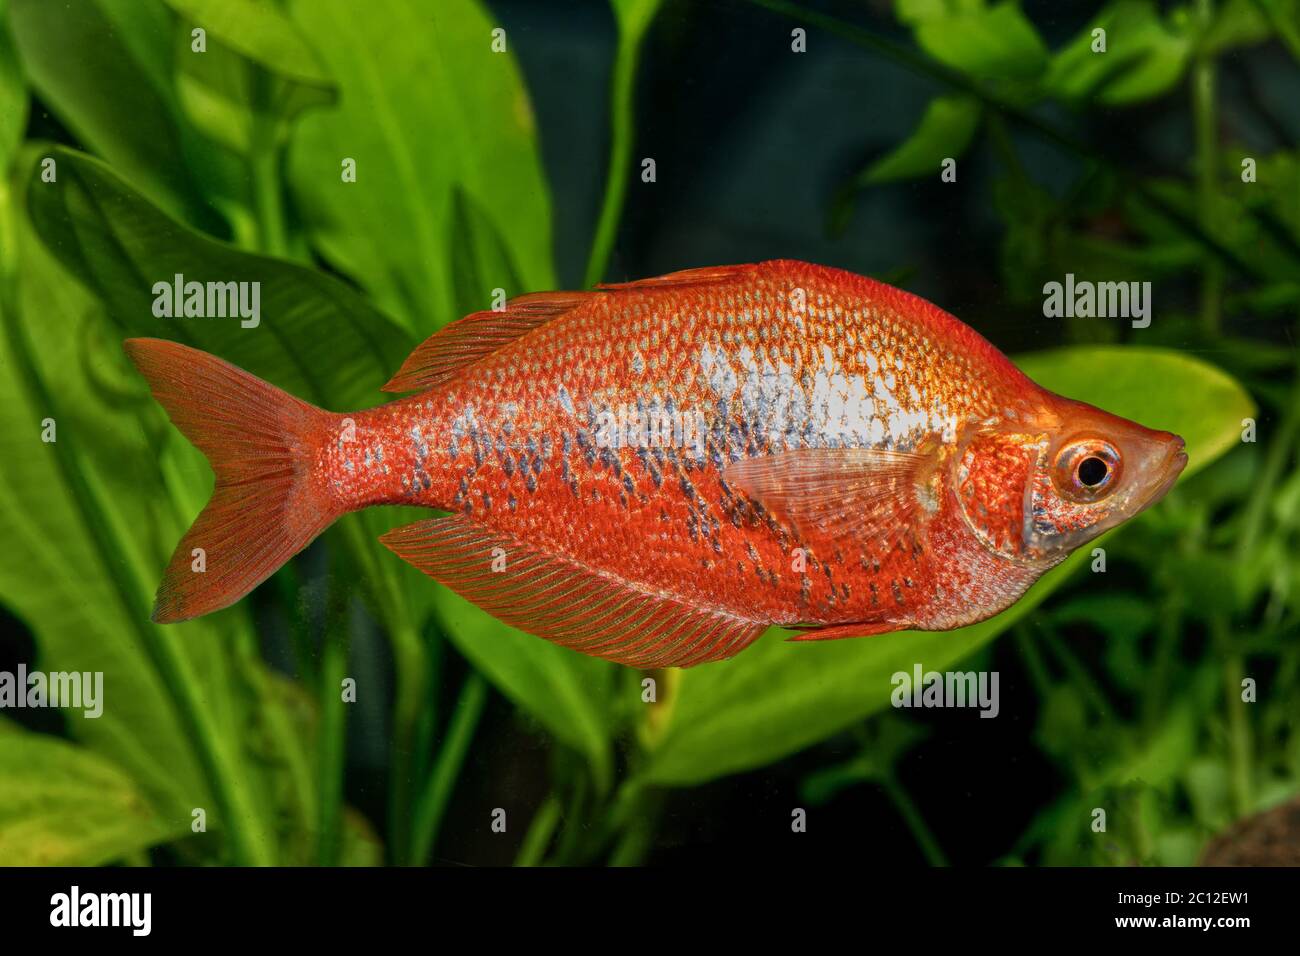 Portrait of rainbow fish (Glossolepis incisus) in aquarium Stock Photo